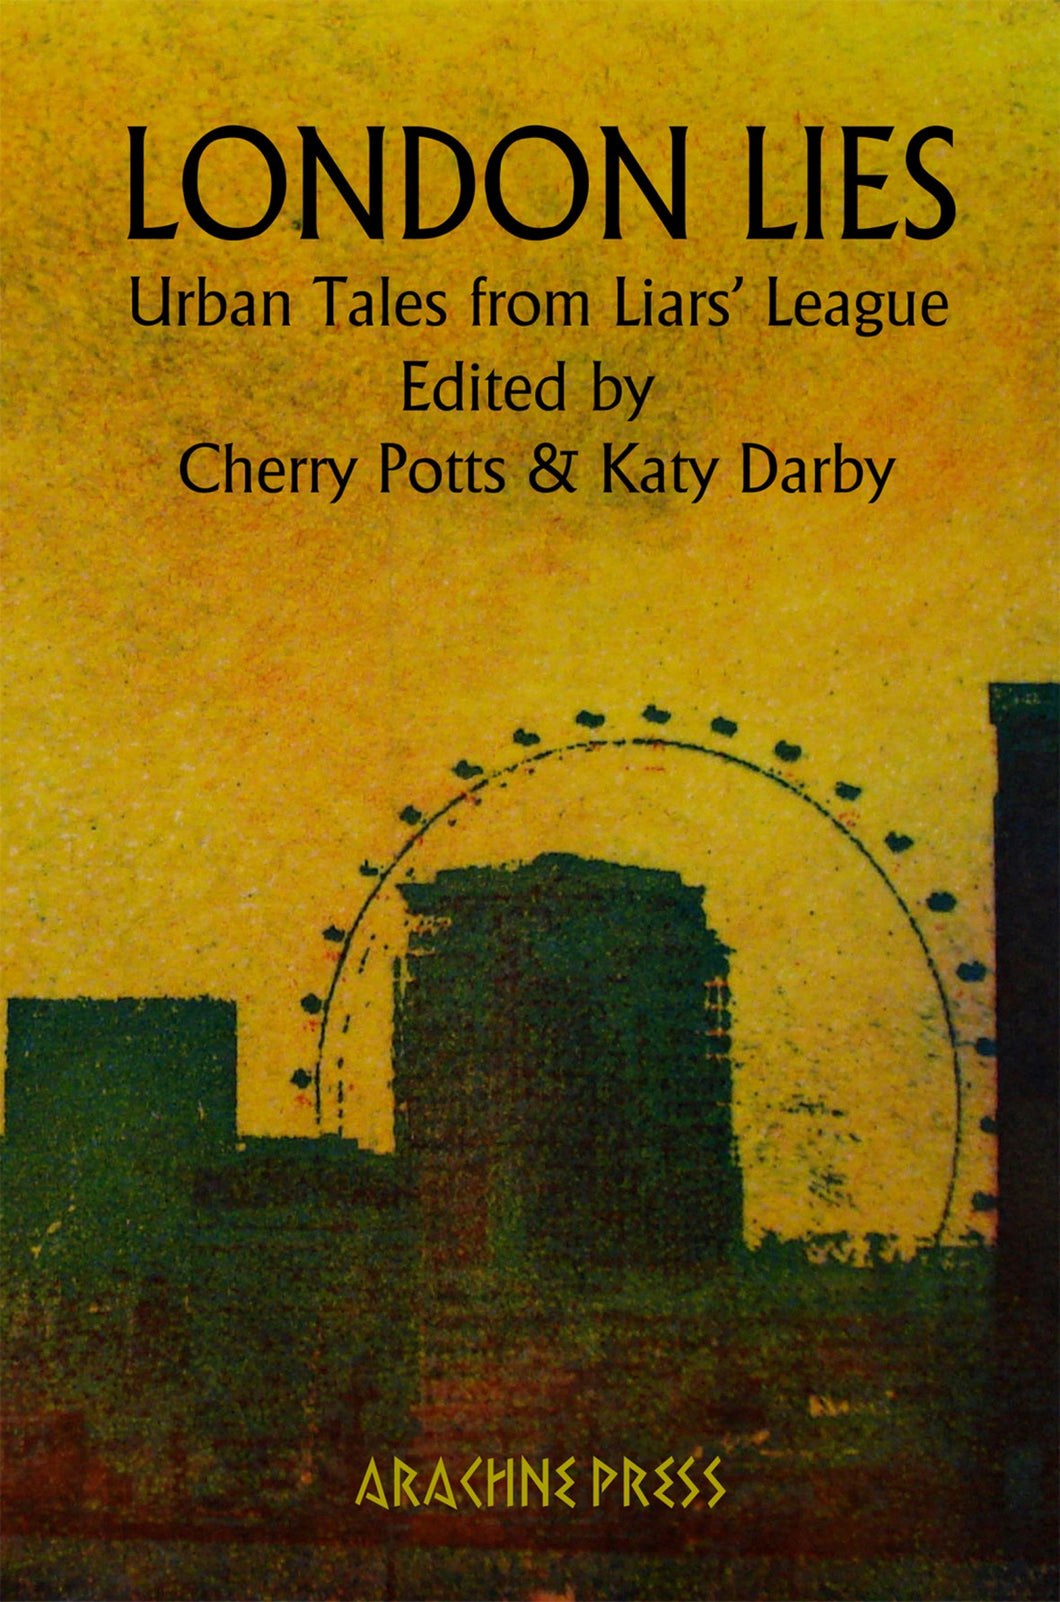 London Lies: Urban Tales from Liars' League